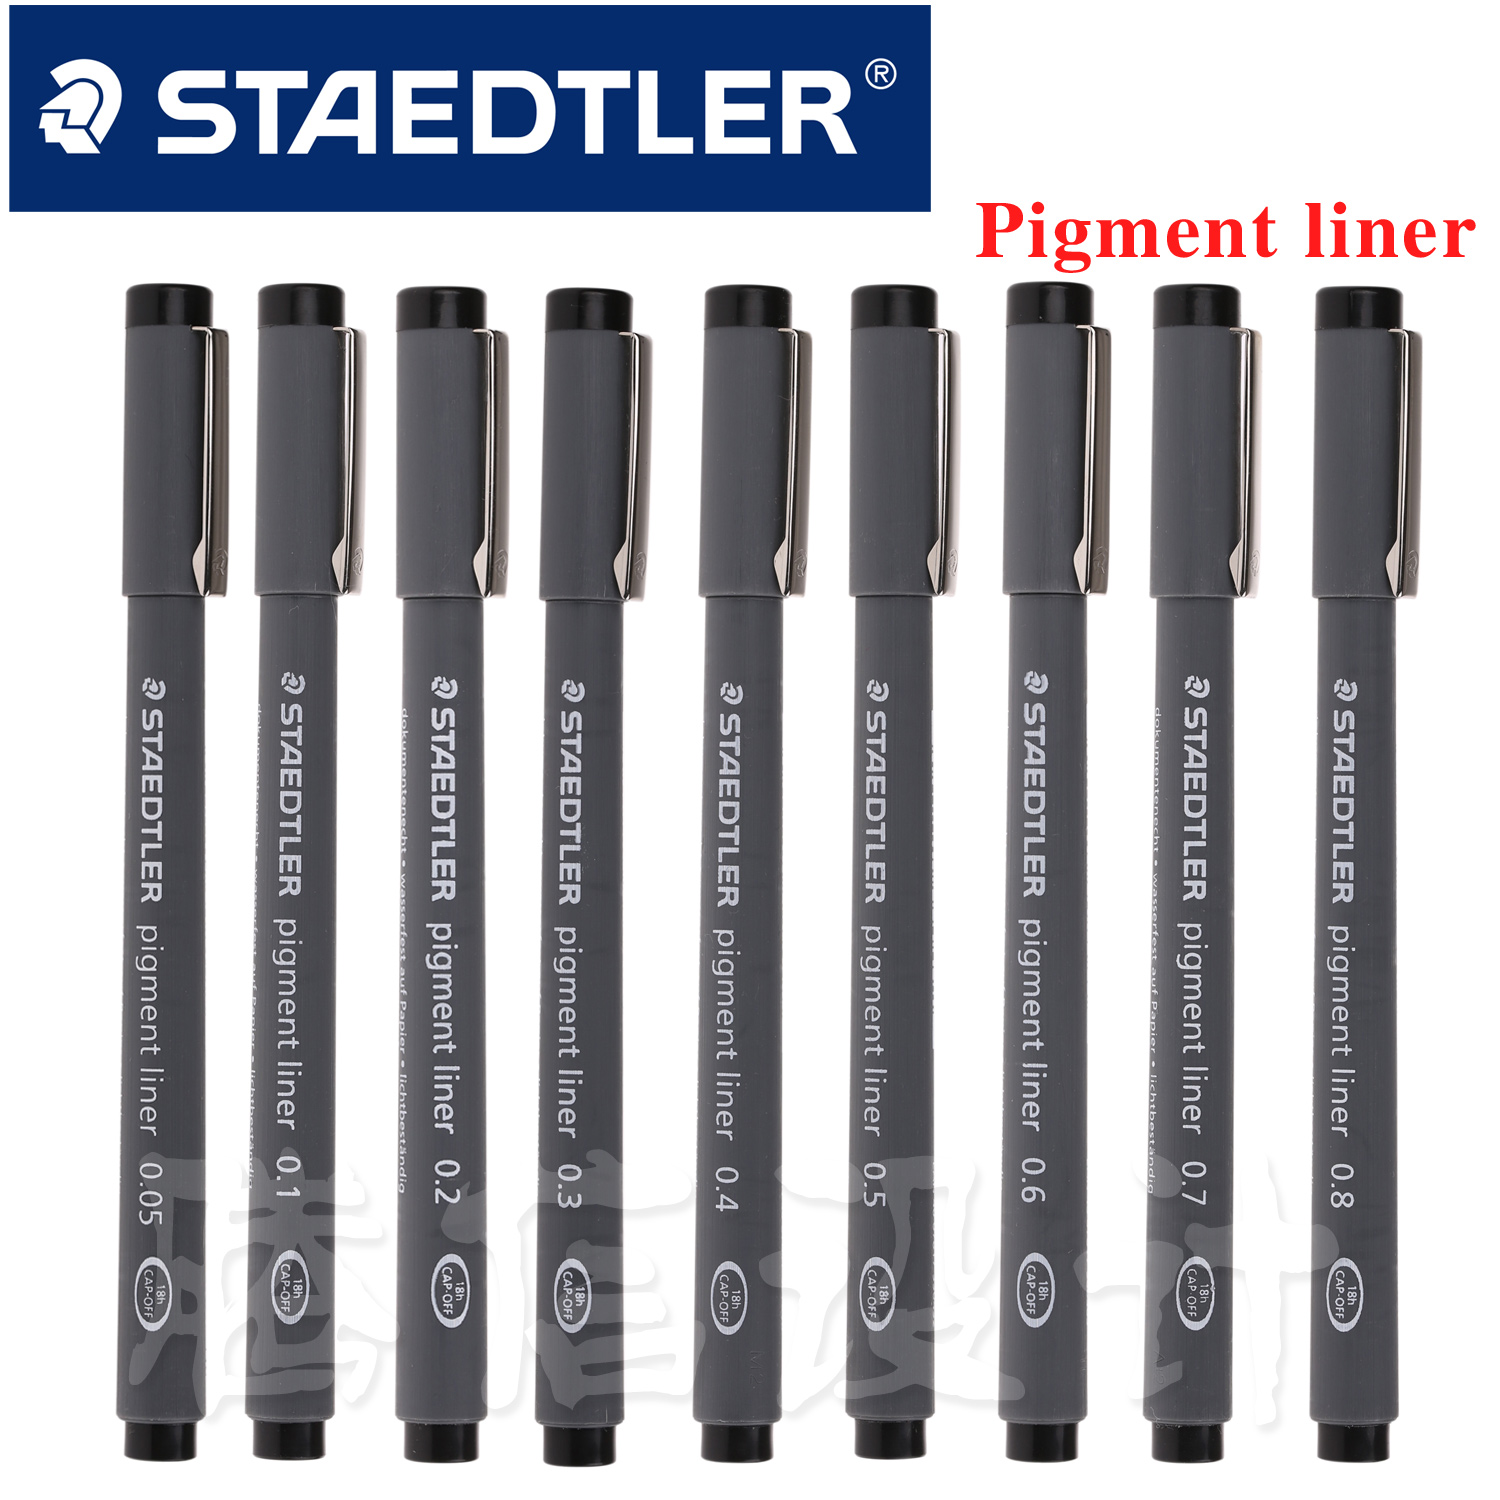 施德楼pigment liner一次性针管笔 （0.05-0.8）型号齐全